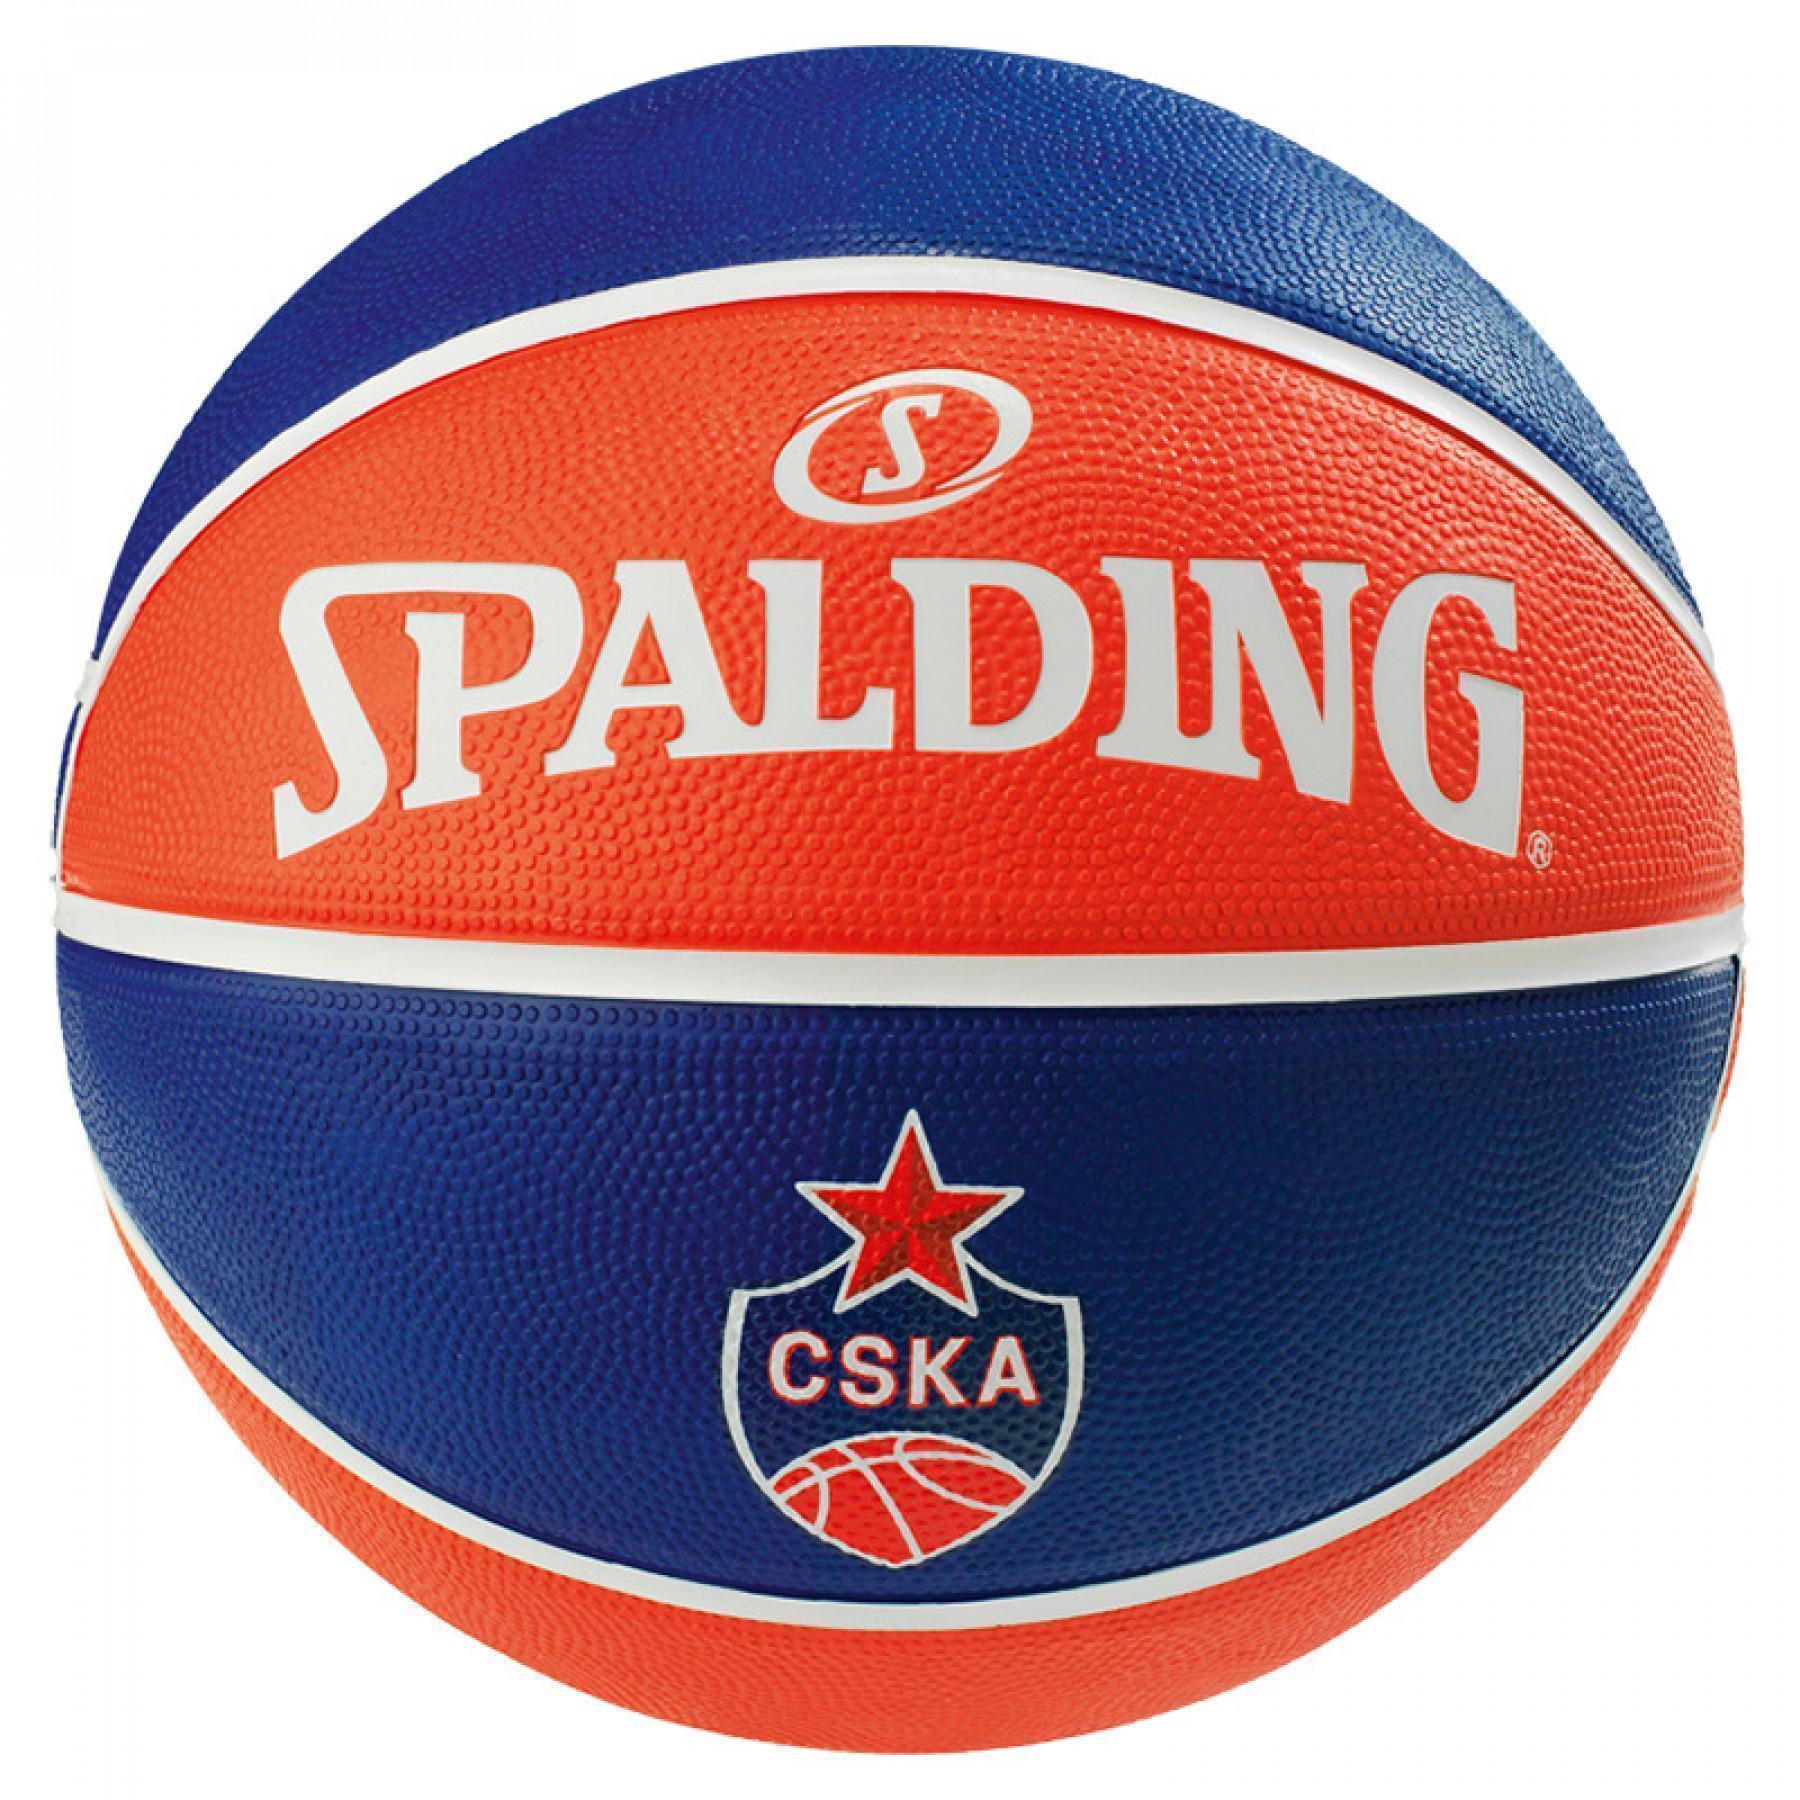 Ballong Spalding EL Team Cska Moscow (83-779z)